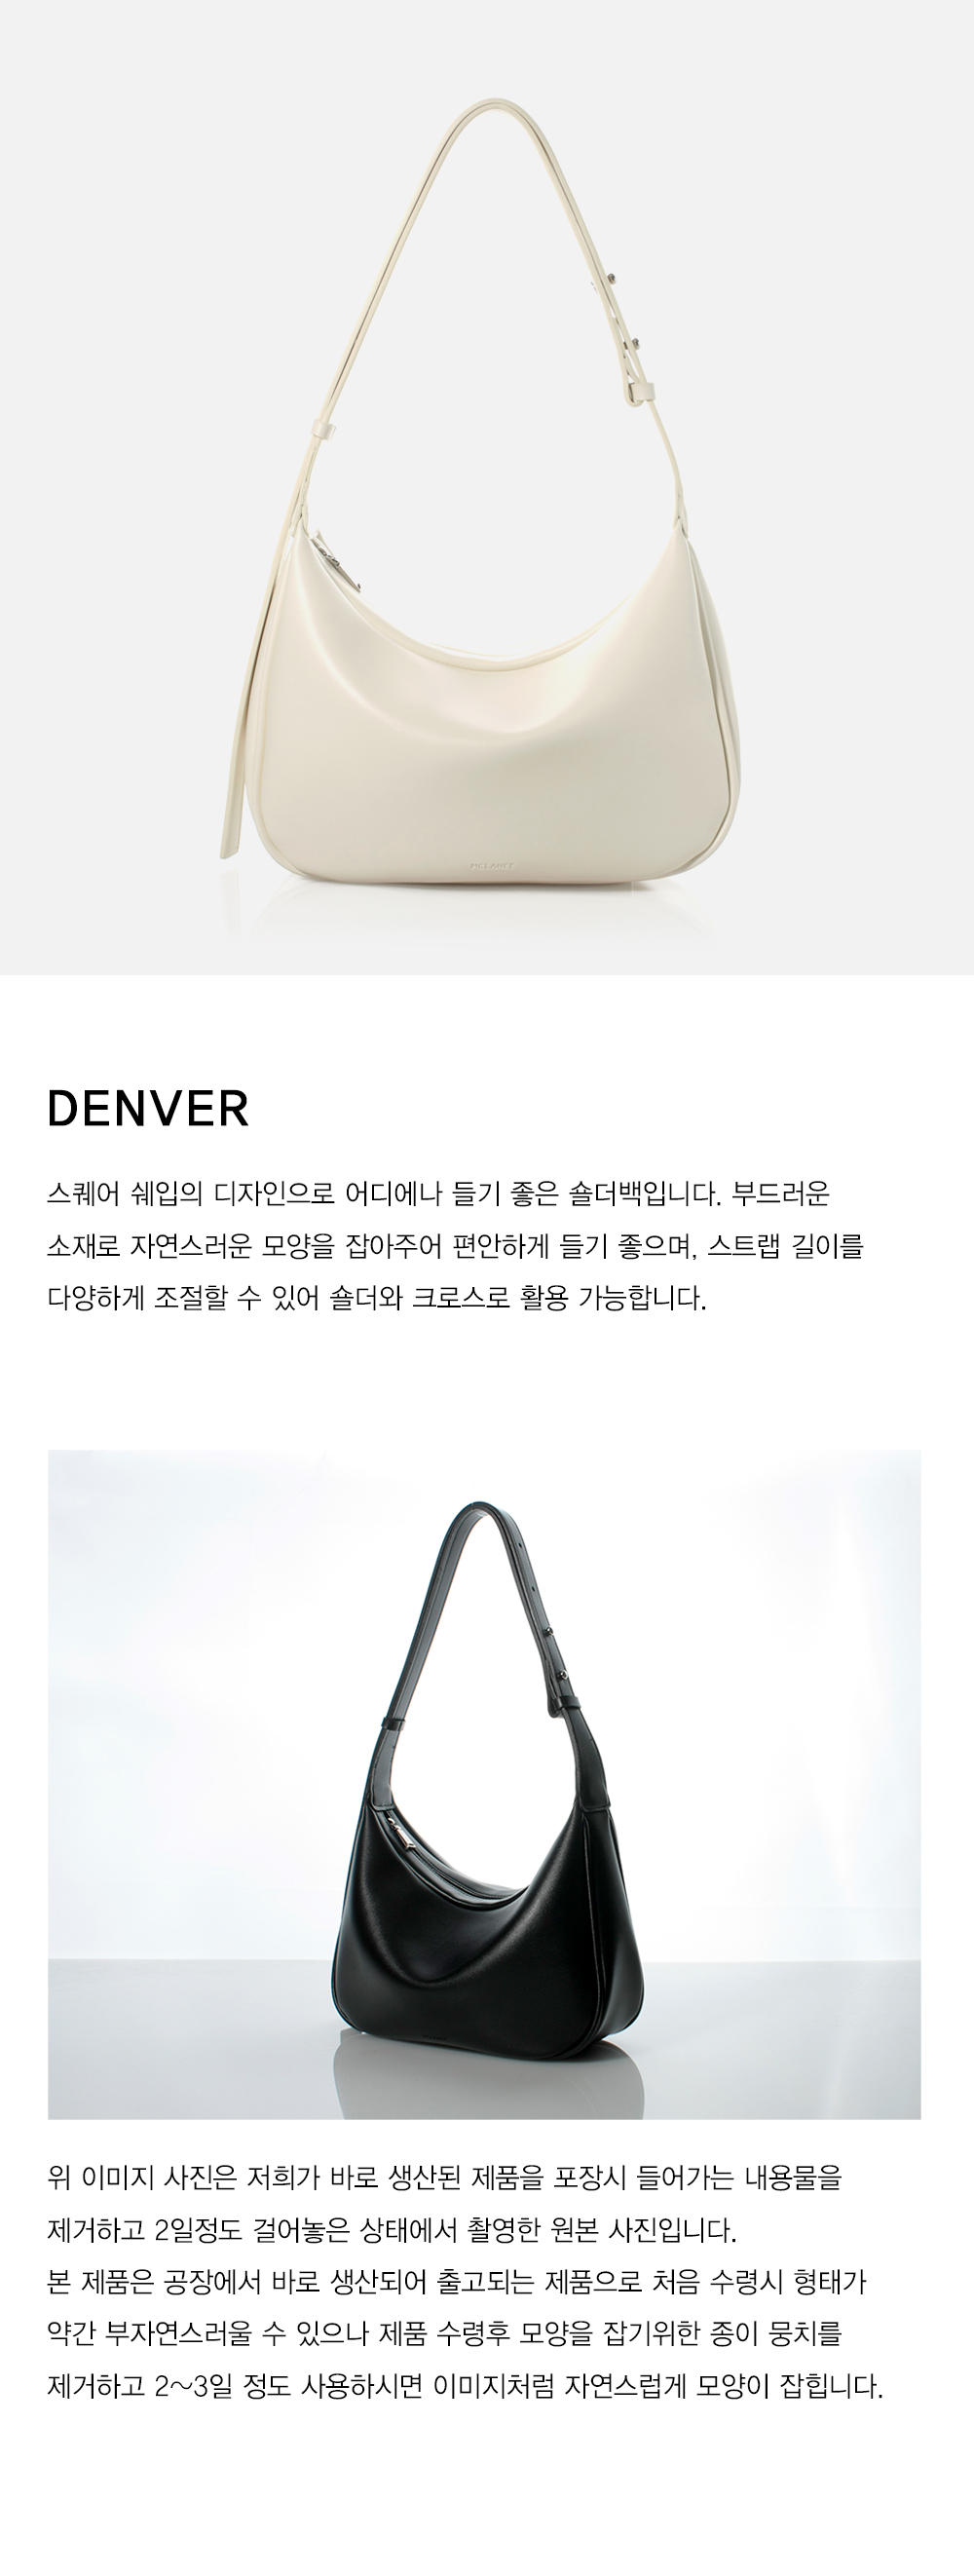 [MCLANEE] Denver shoulder and cross bag - Ivory